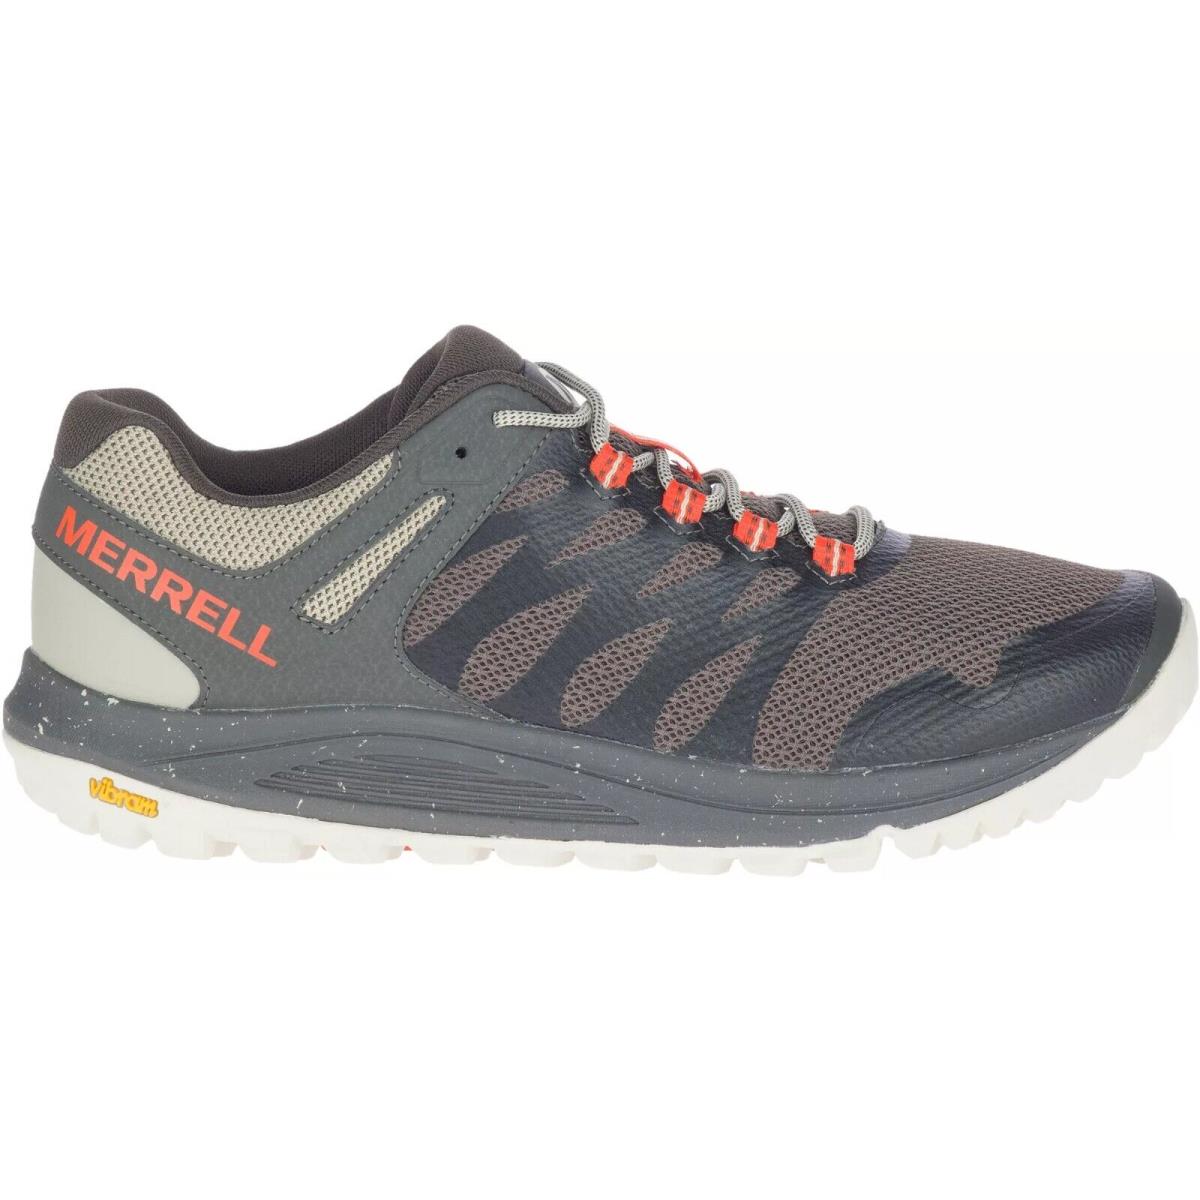 Merrell Nova 2 Boulder Brown Orange Running Shoes Men`s Sizes 8-13